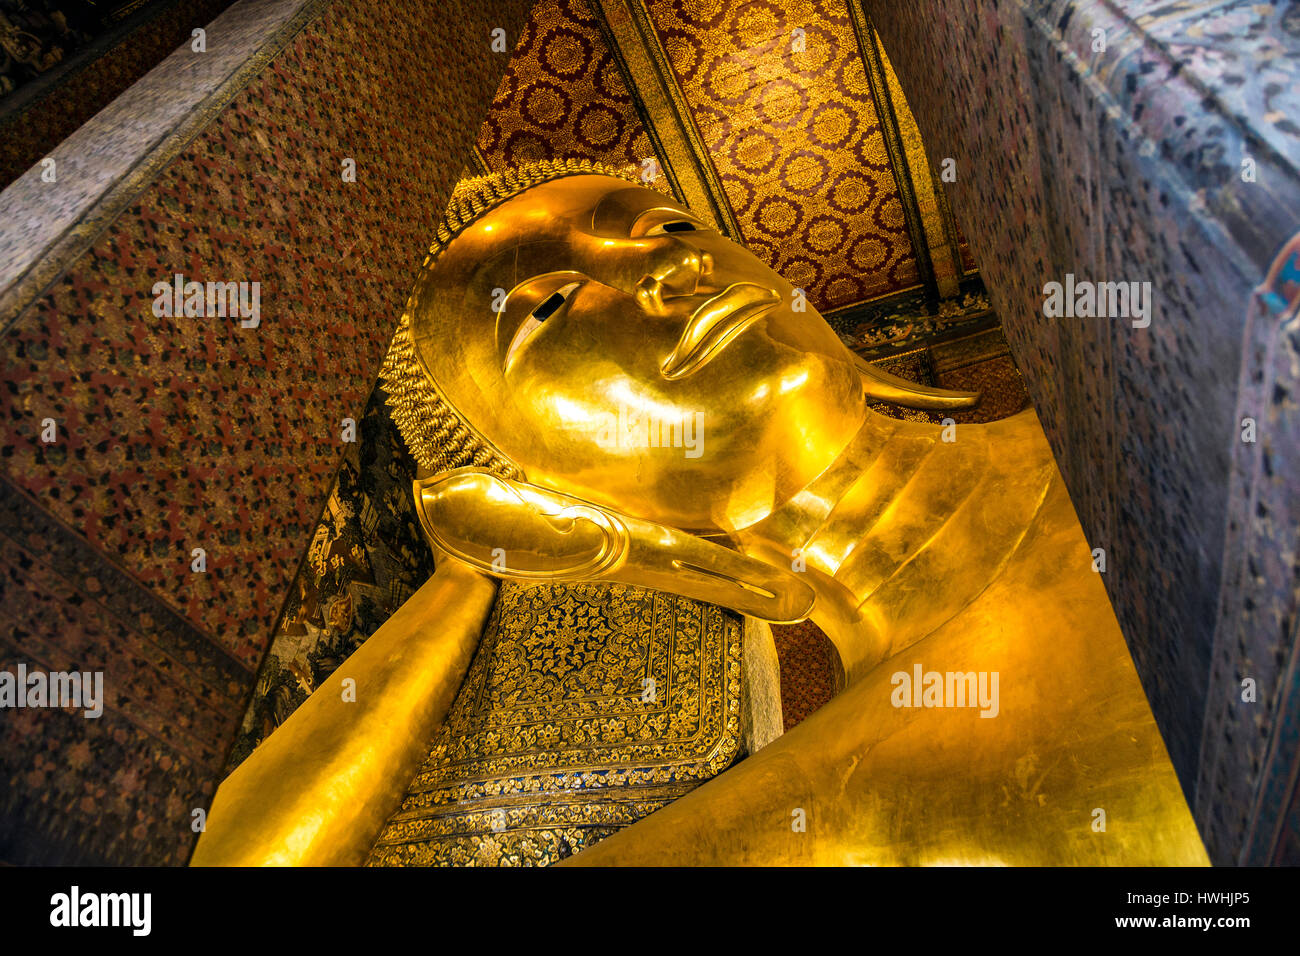 Reclining Buddha at Wat Pho Temple, Bangkok, Thailand Stock Photo